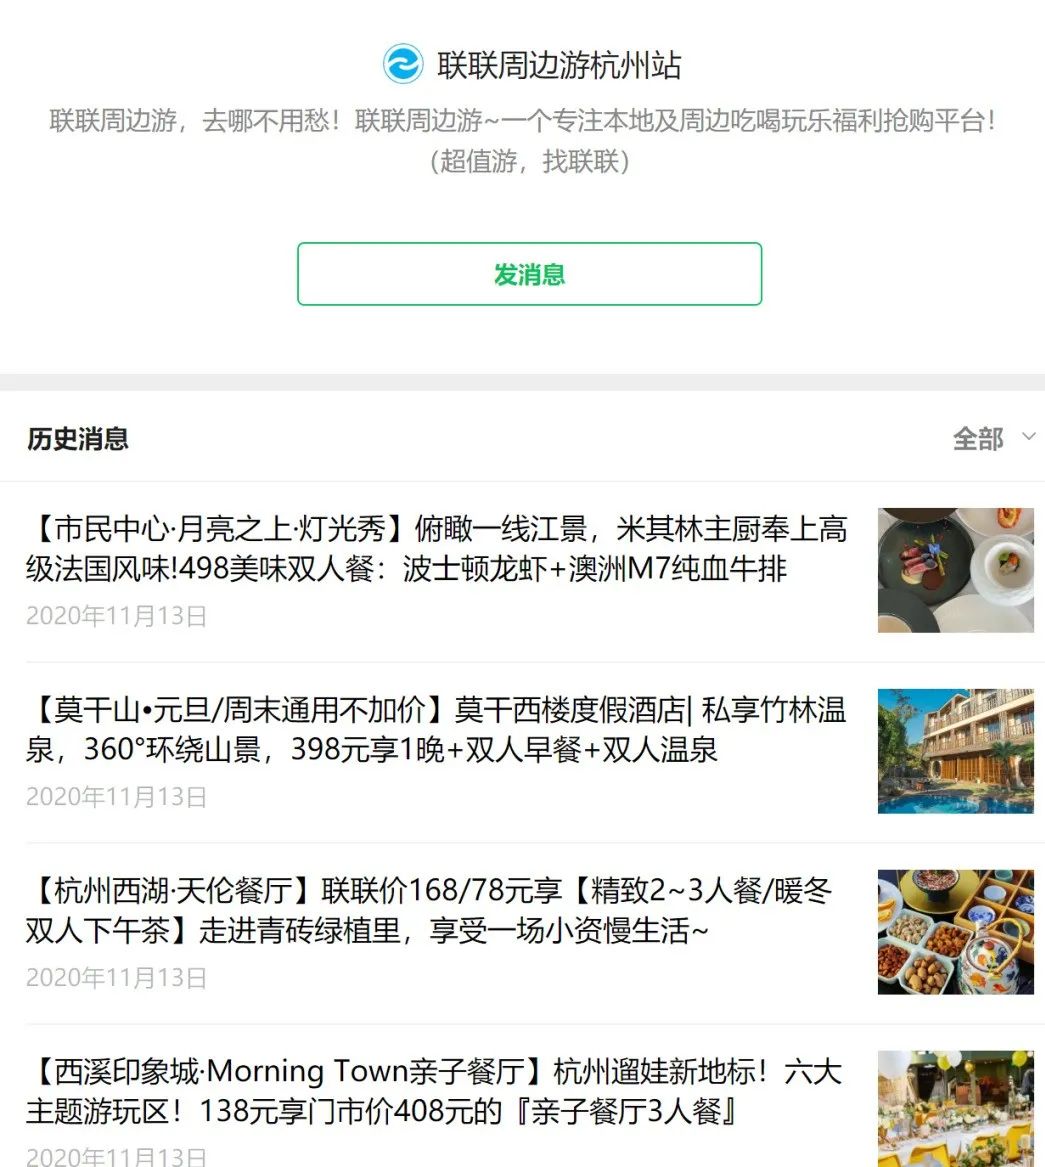 联联周边游杭州站公众号截图 